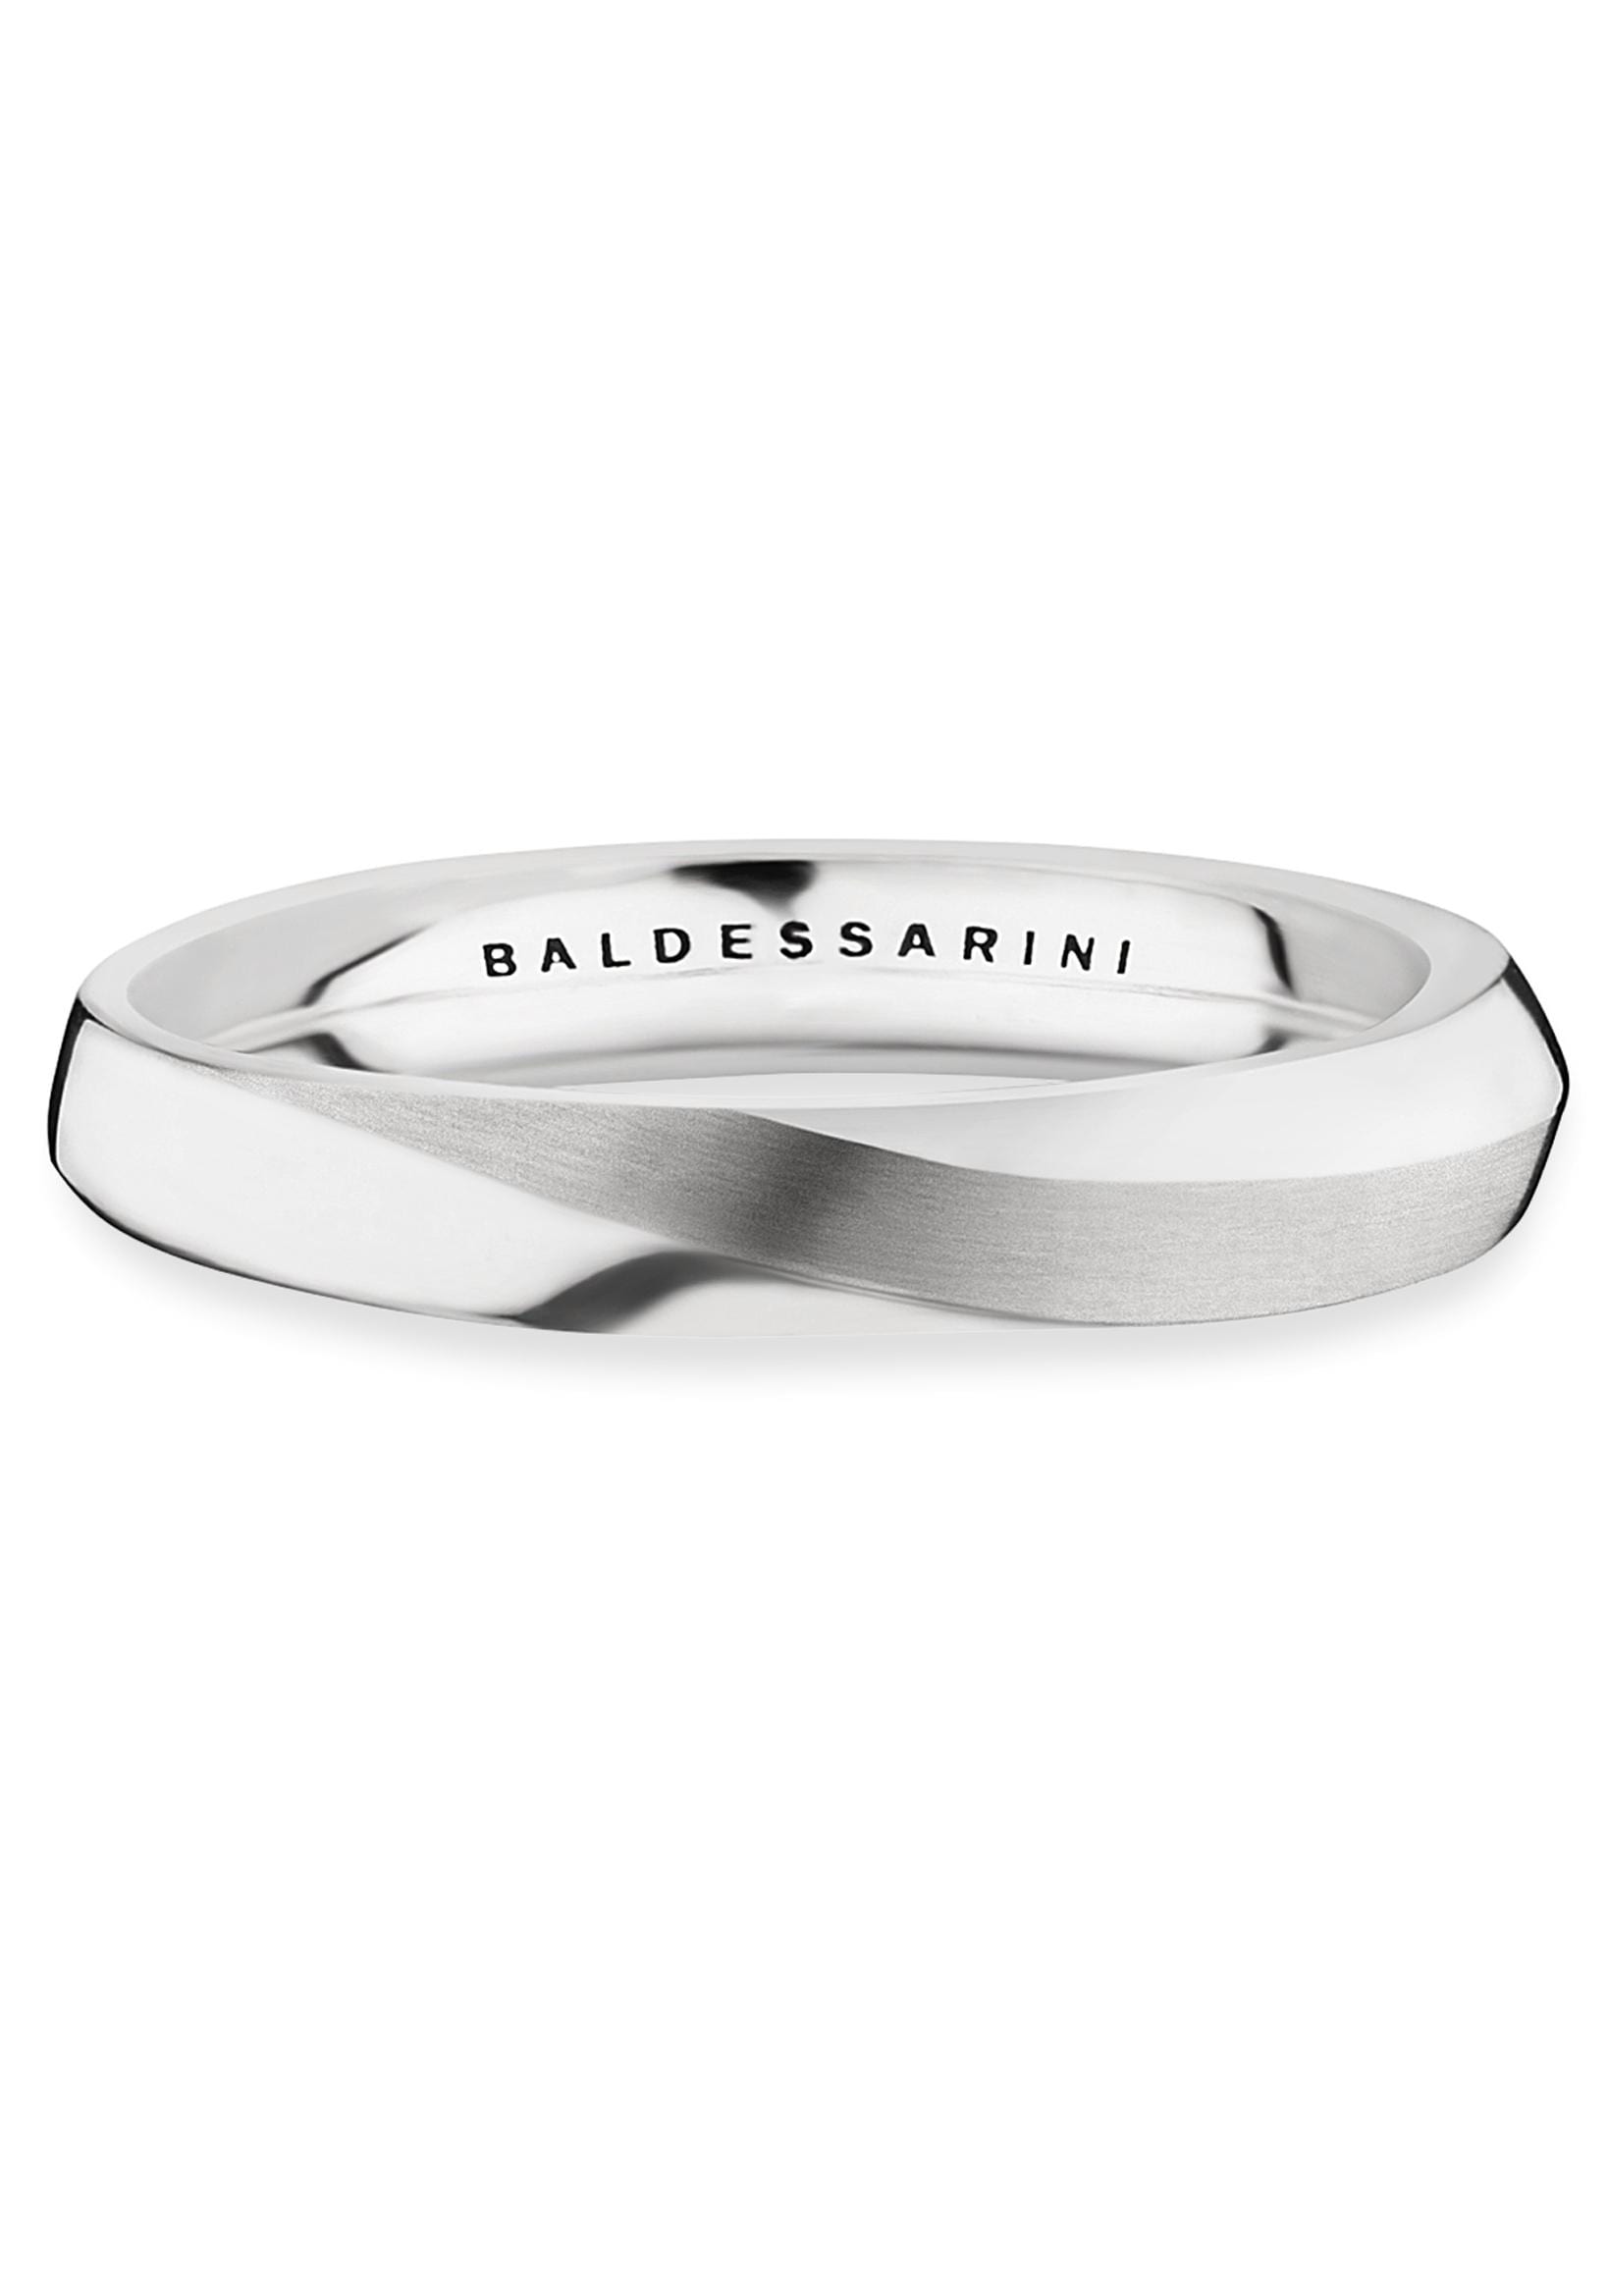 BALDESSARINI Silberring »Y2159R/90/00/60« bequem kaufen